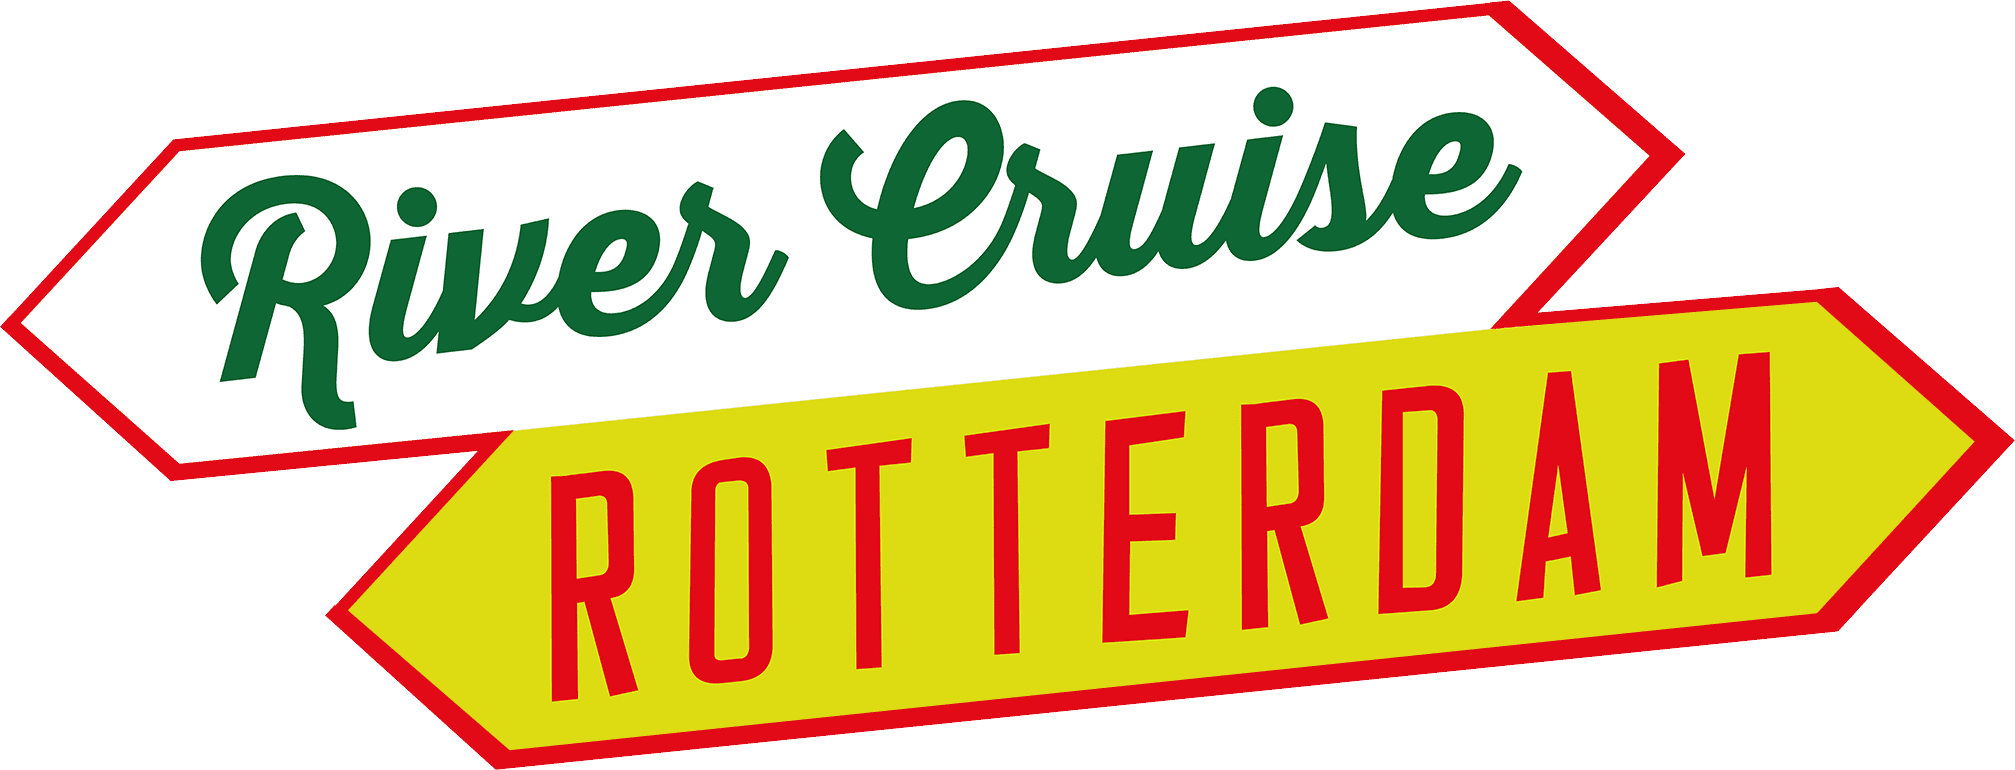 river-cruise-logo